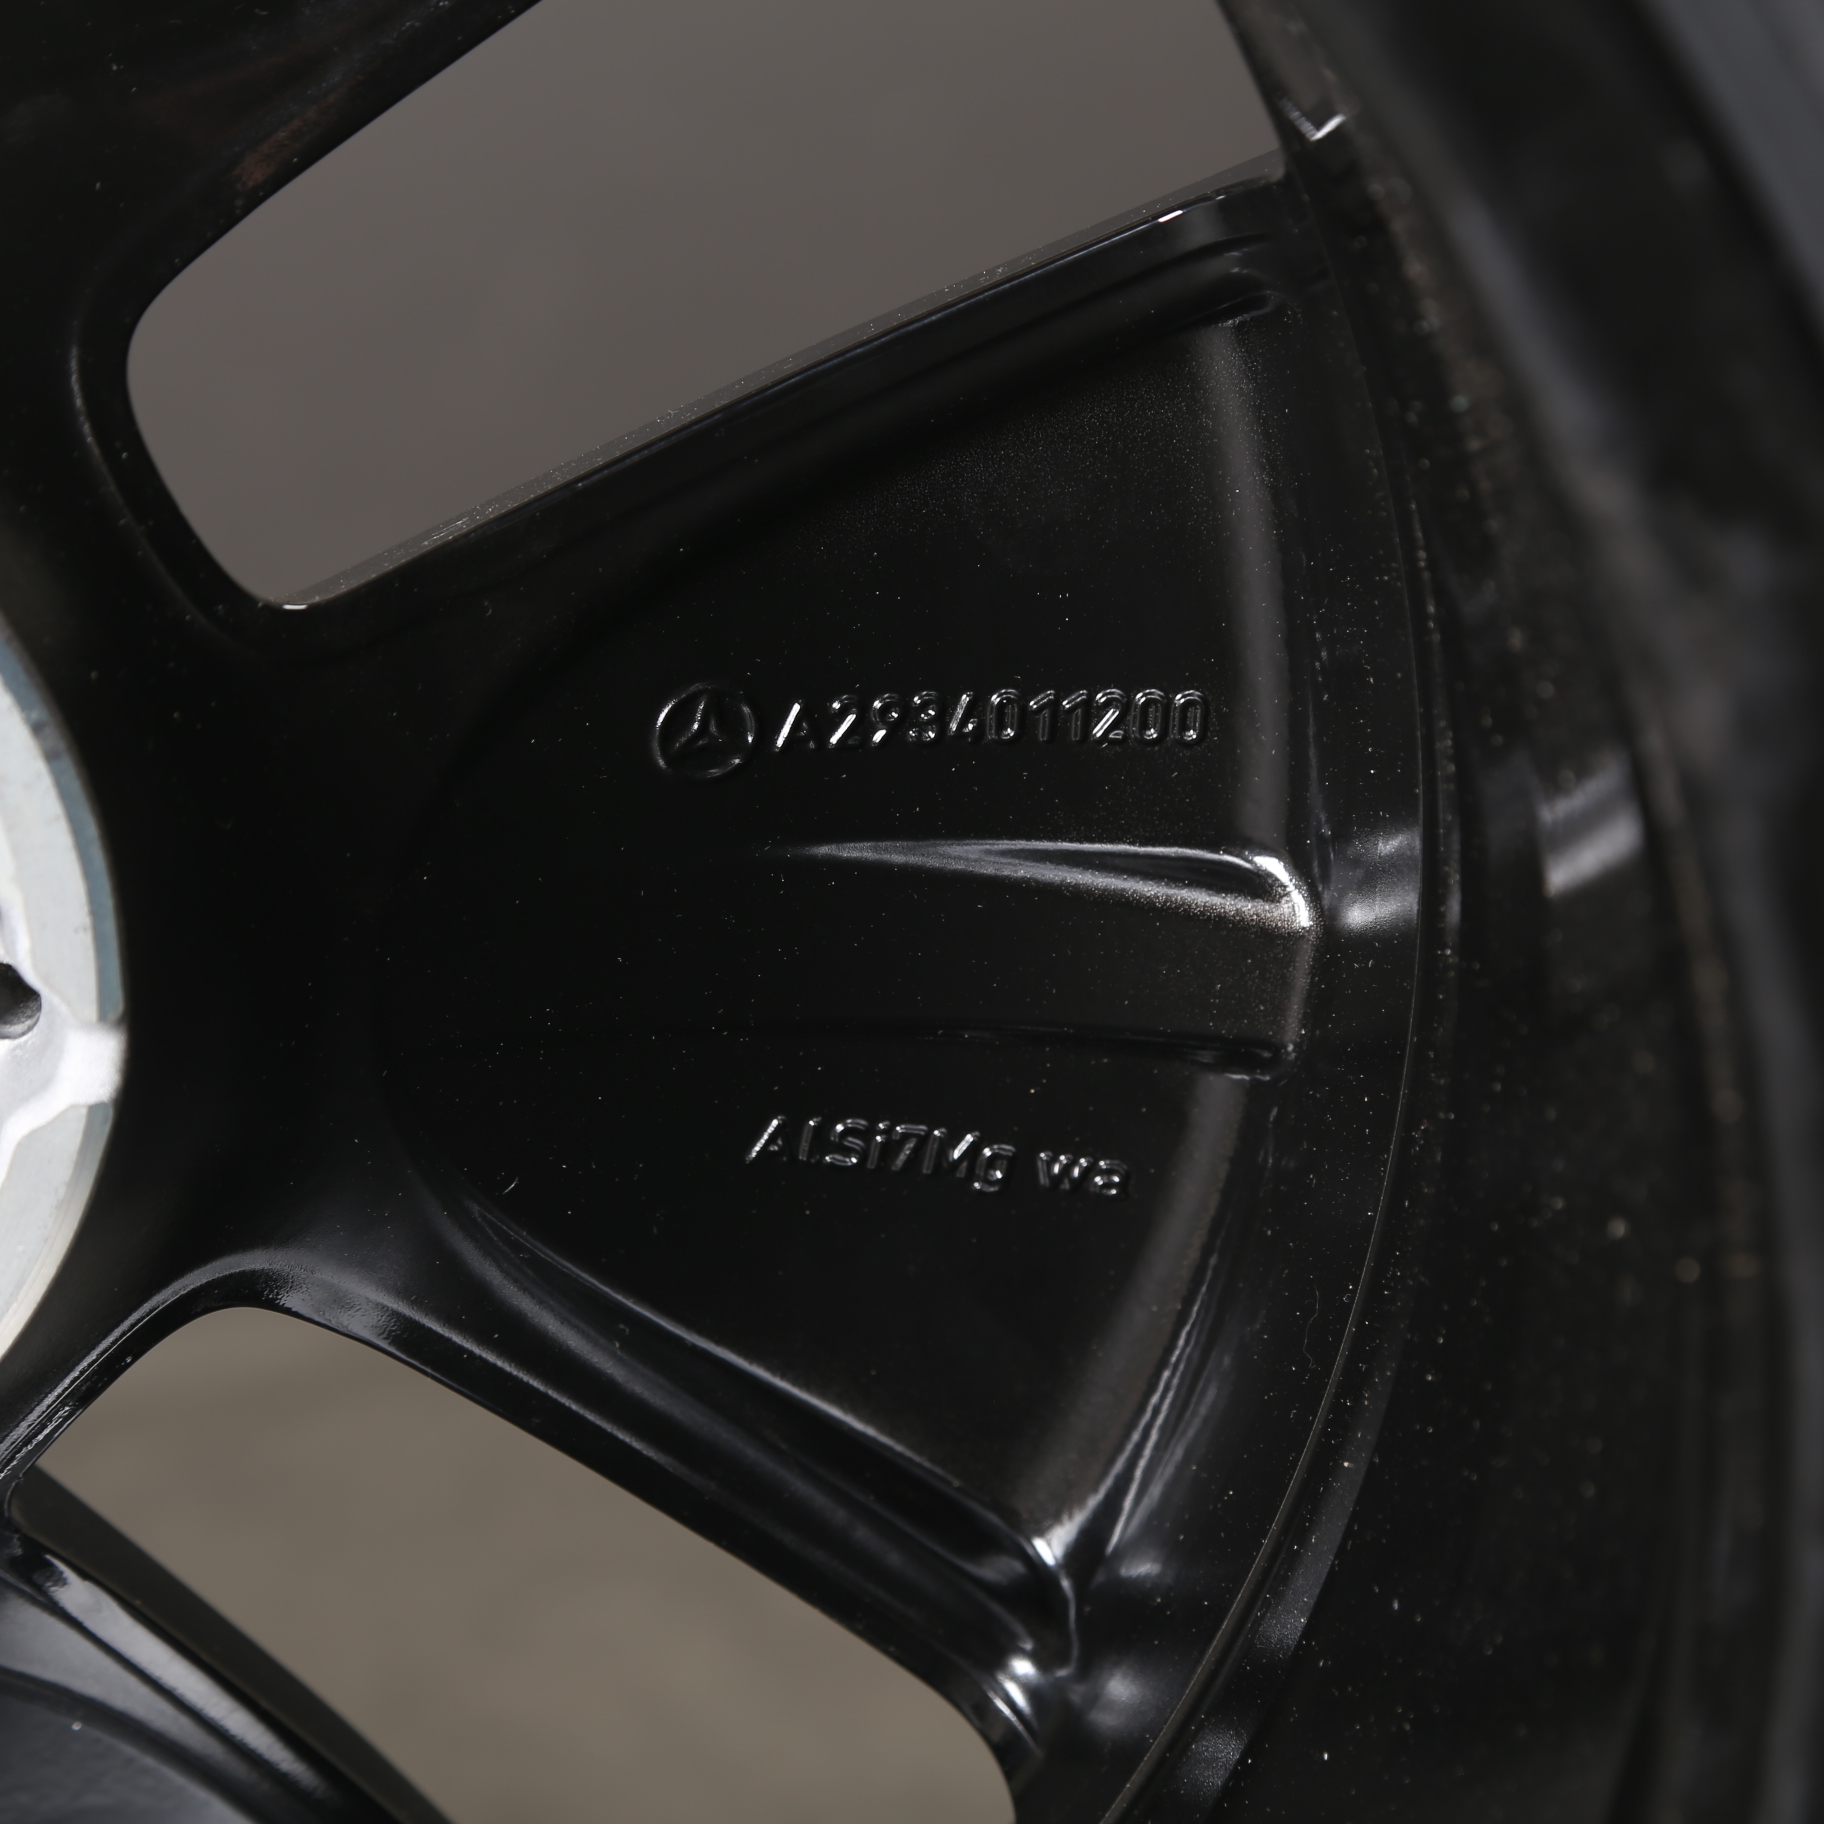 Llantas de invierno de 19 pulgadas originales Mercedes EQC N293 A2934010100 neumáticos de invierno